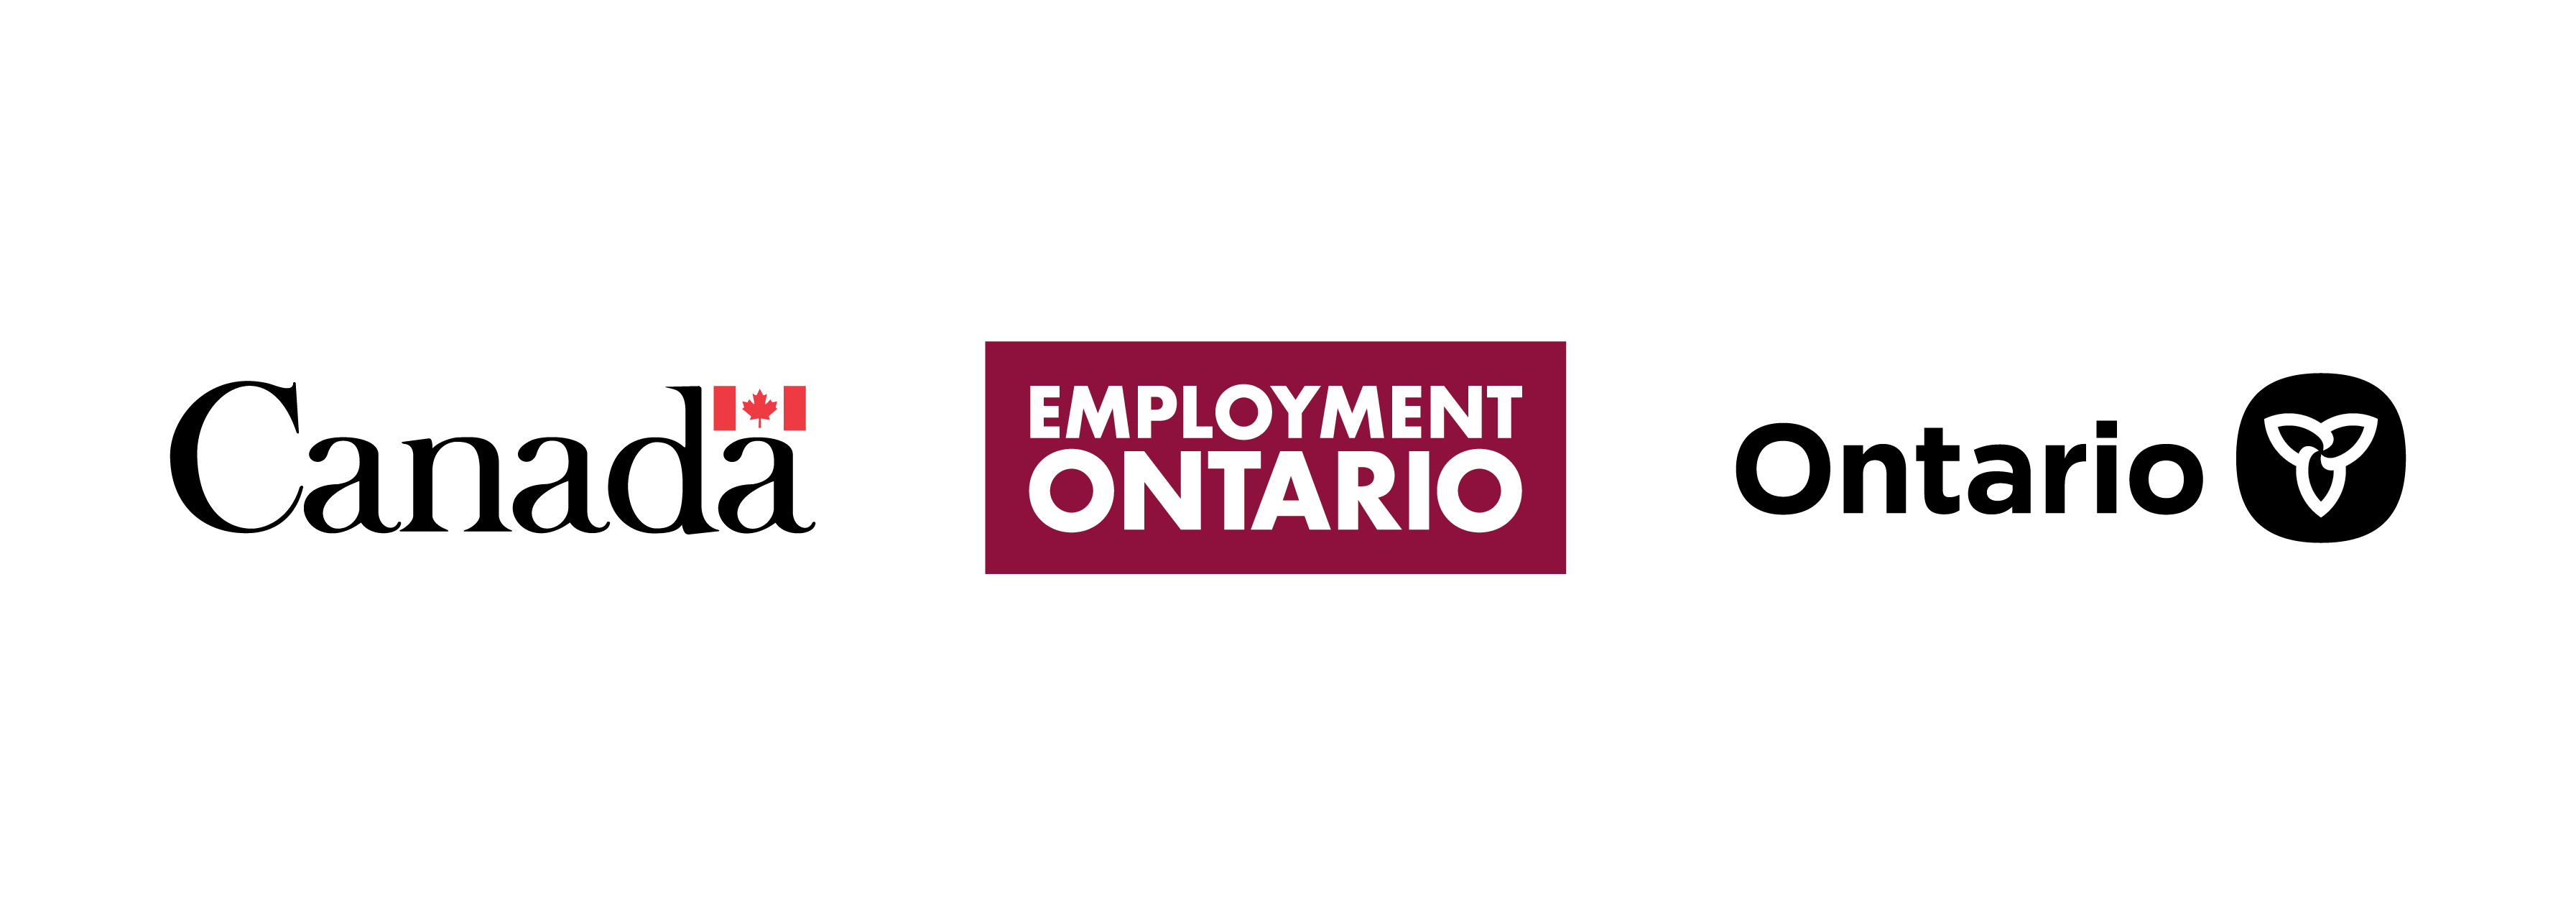 Canada, Employment Ontario, and Ontario logos